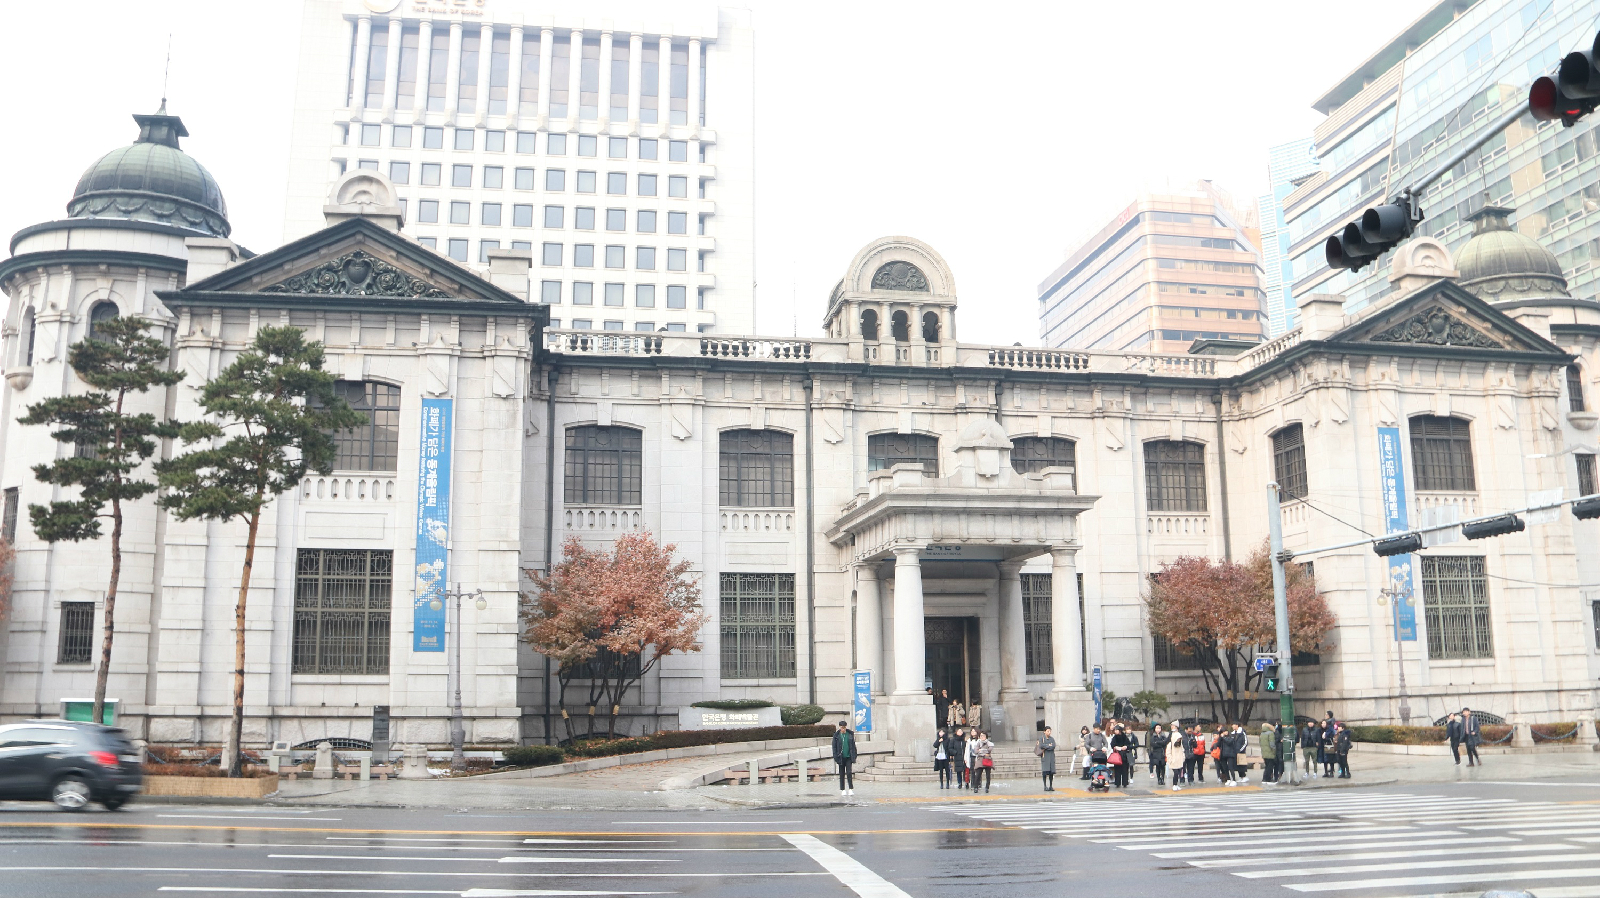 한국은행 화폐박물관 외부